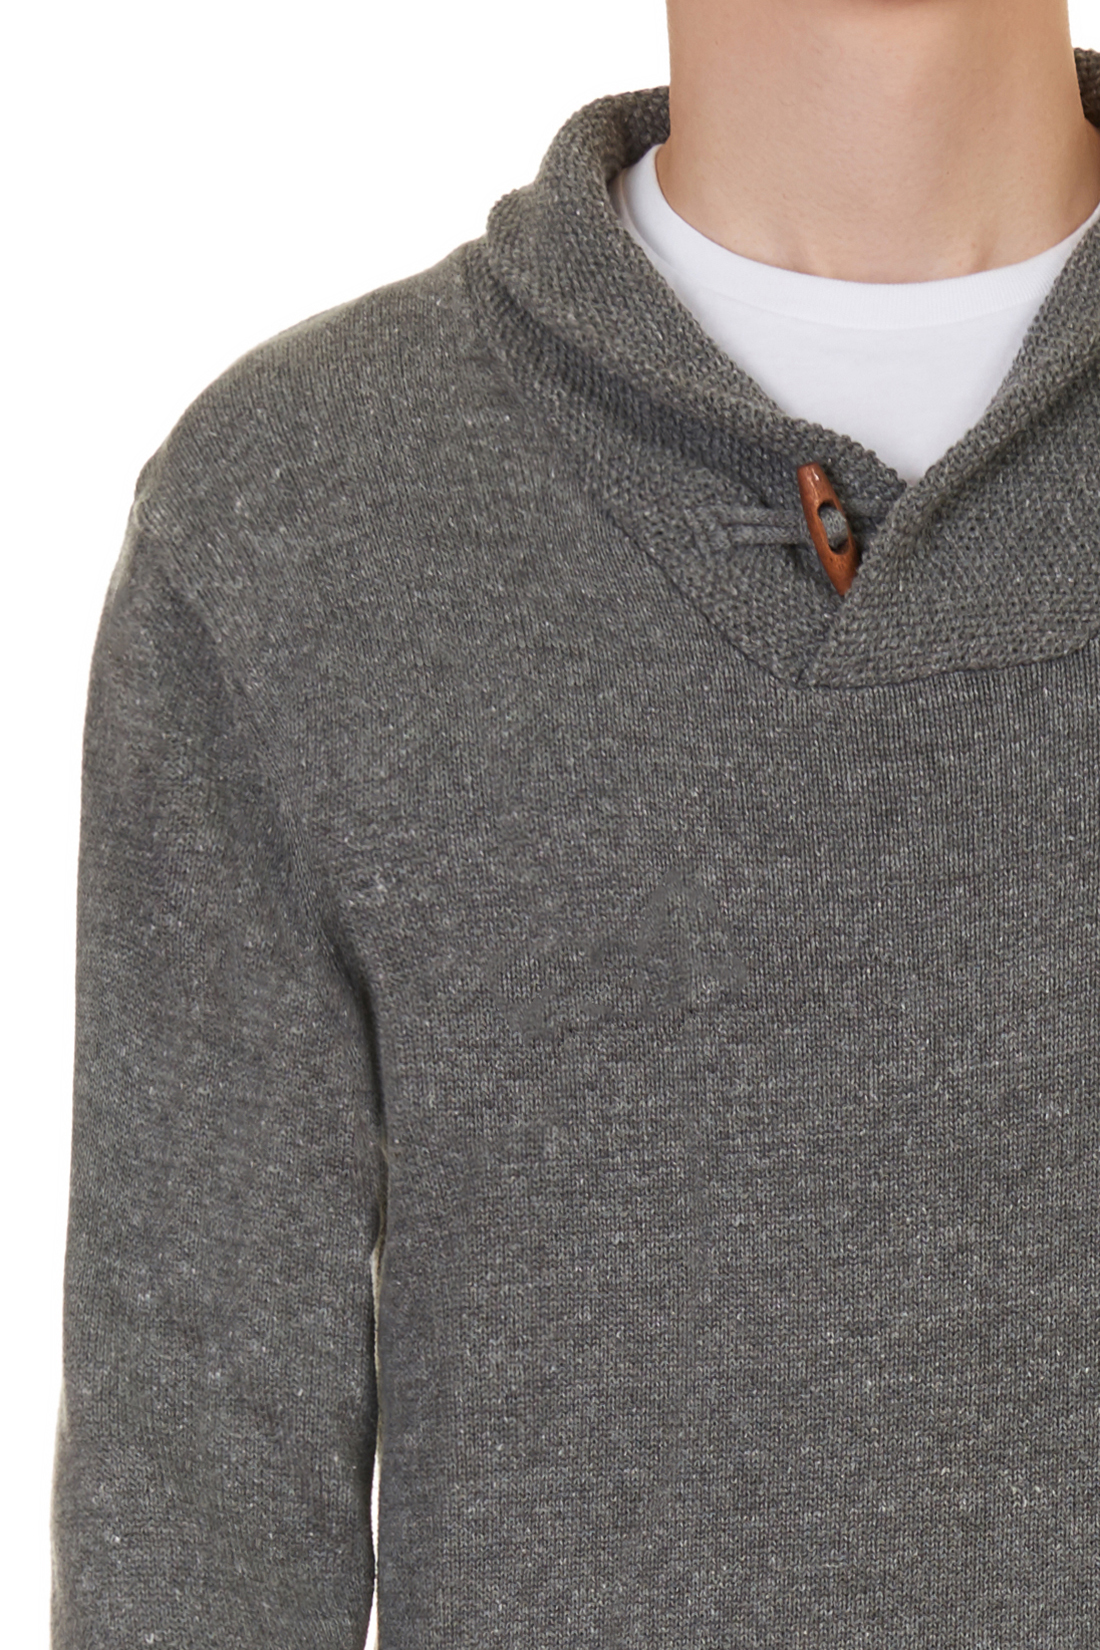 Джемпер с шалевым воротником (арт. baon B637561), размер XXL, цвет grey melange#серый Джемпер с шалевым воротником (арт. baon B637561) - фото 4